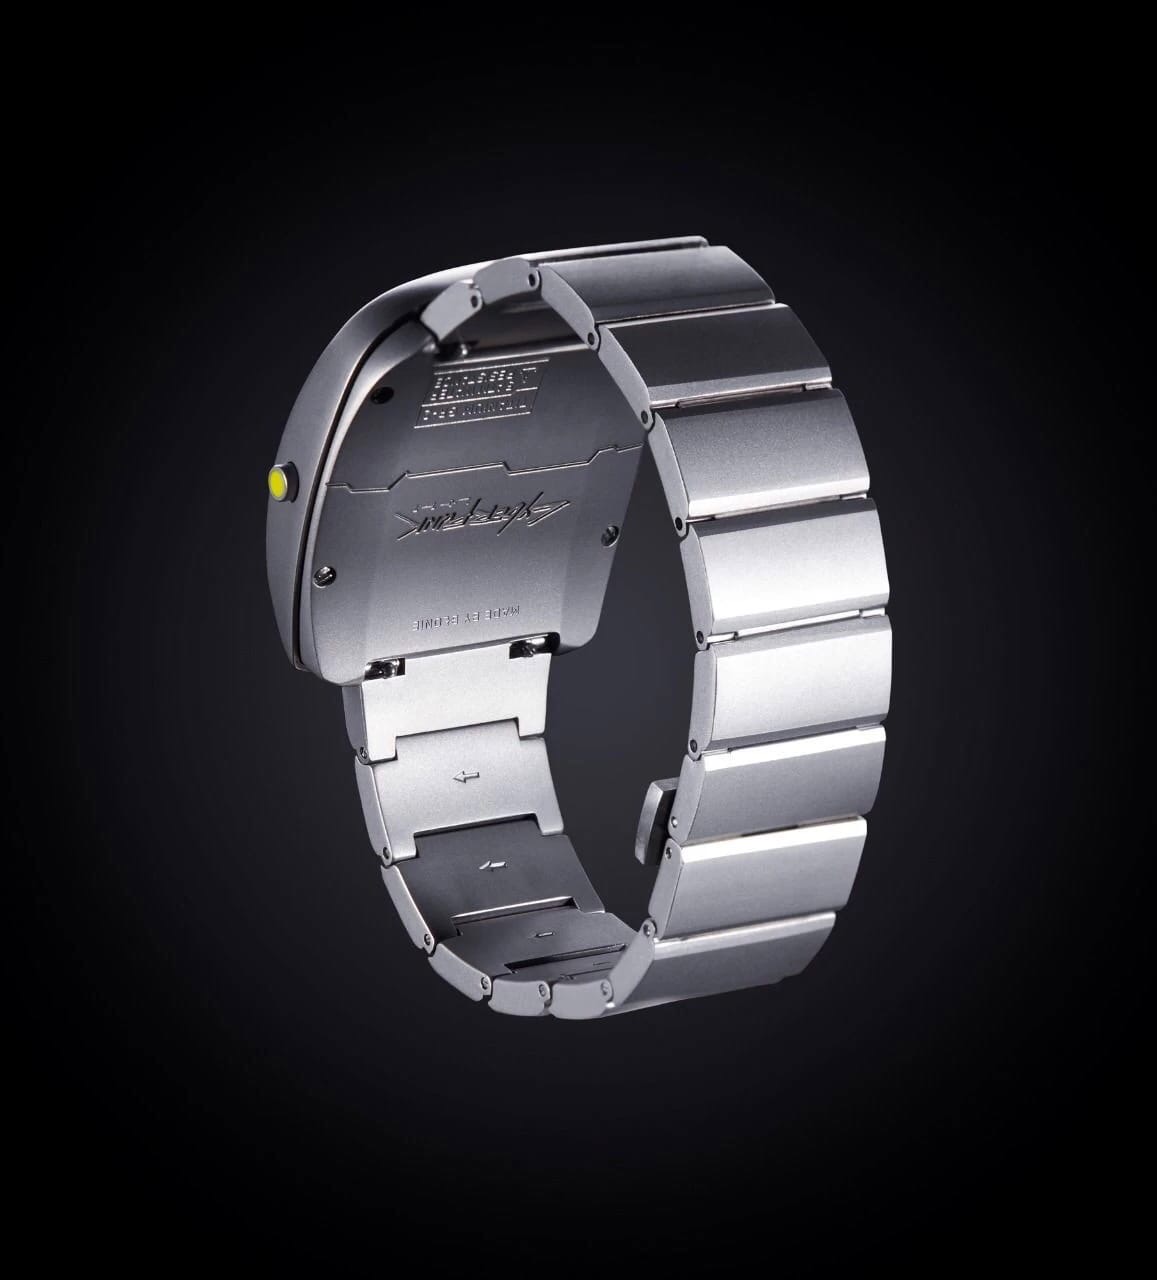 Студия CD Projekt RED выпустила часы в стилистике Cyperpunk 2077 - T-2077.